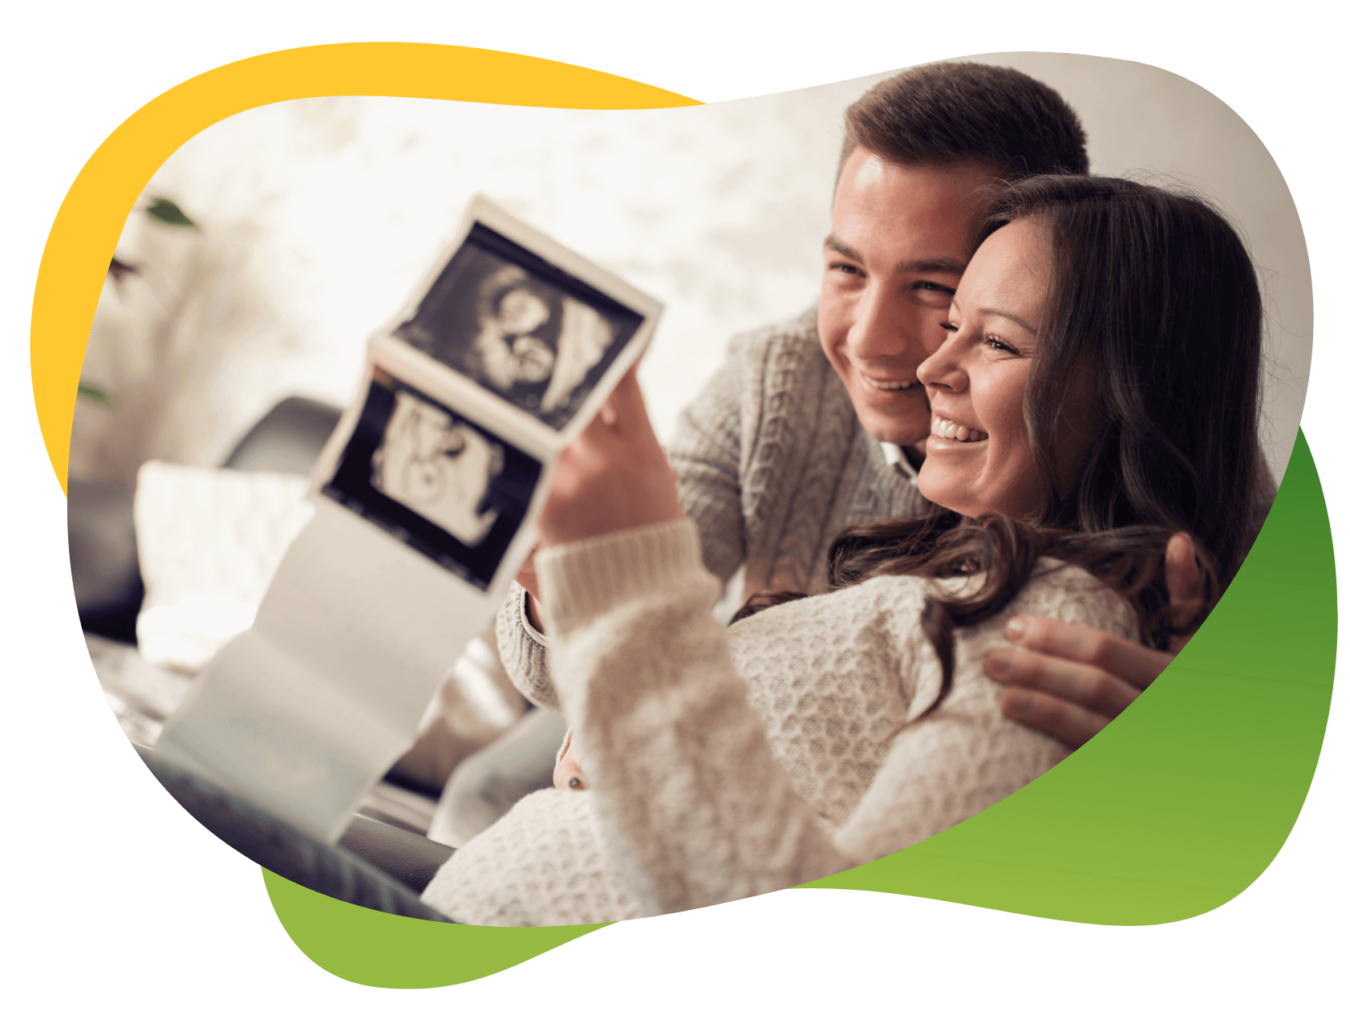 Szczęśliwi rodzice oglądają zdjęcia USG swojego nienarodzonego dziecka